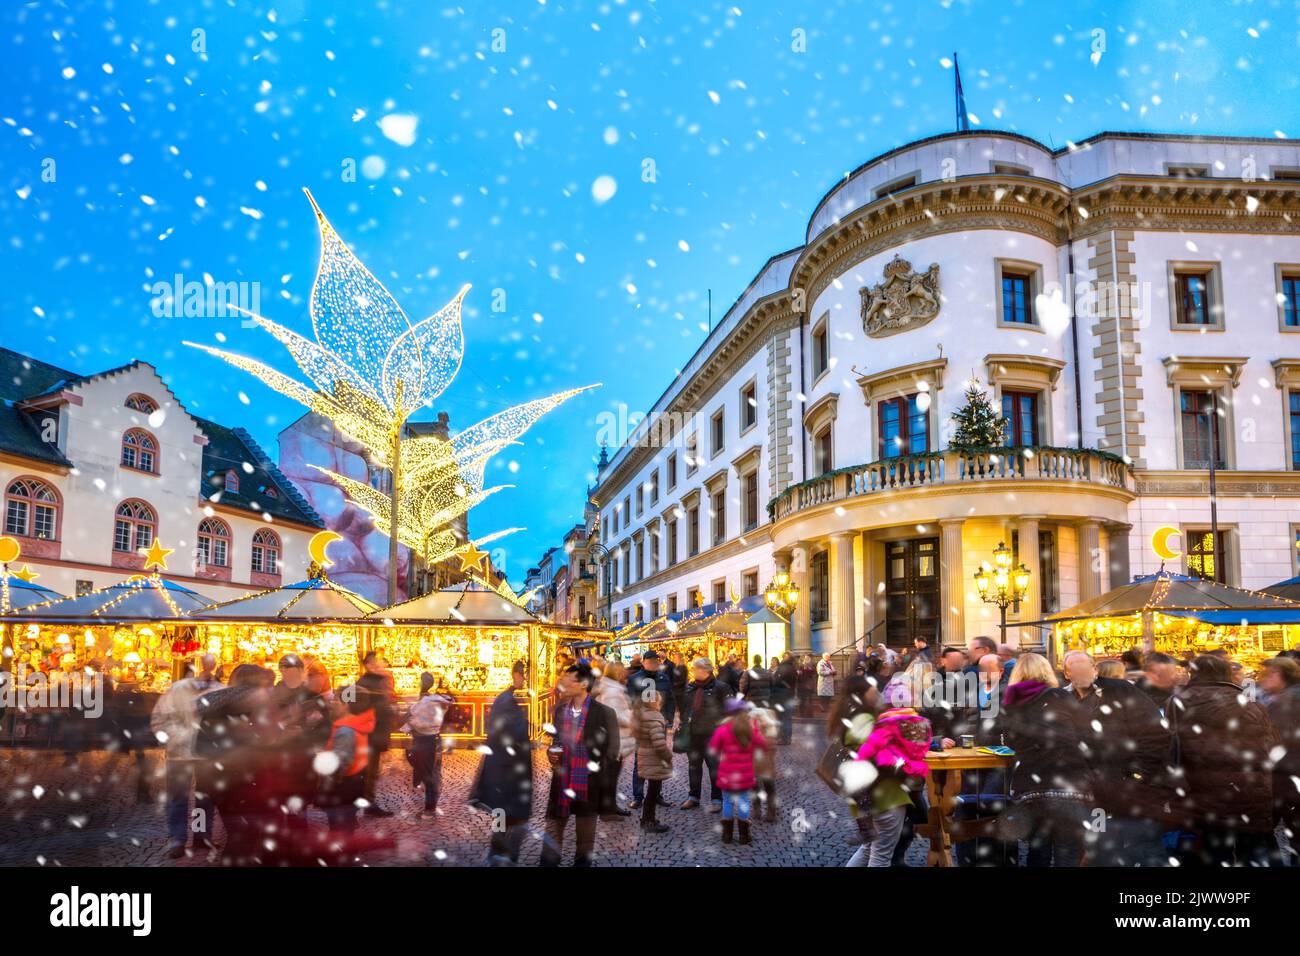 Christmas Market, Wiesbaden, Germany Stock Photo Alamy